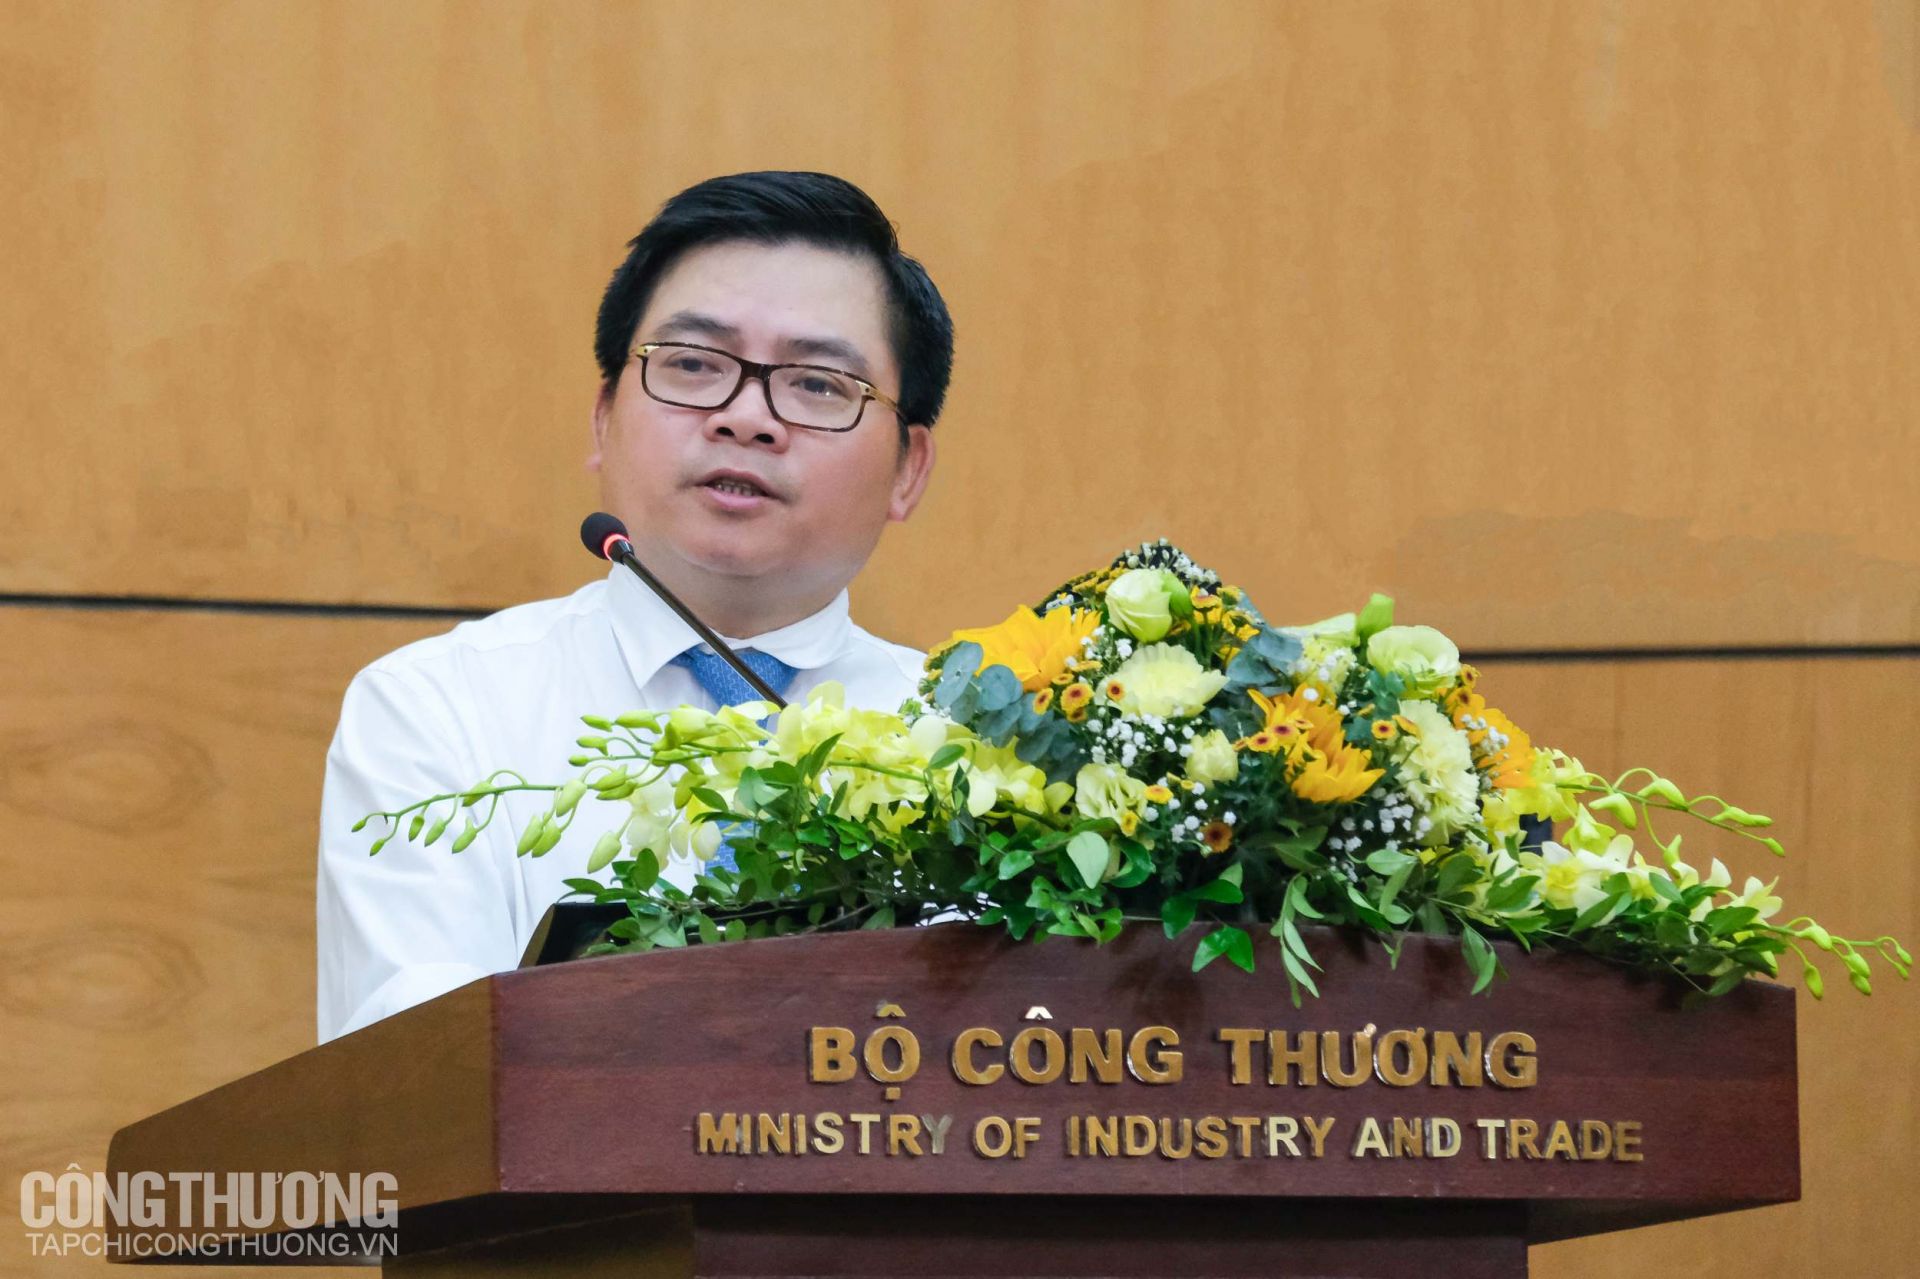 Đồng chí Trương Thanh Hoài - Bí thư Đảng uỷ, Cục trưởng Cục Công nghiệp phát biểu khai mạc Đại hội